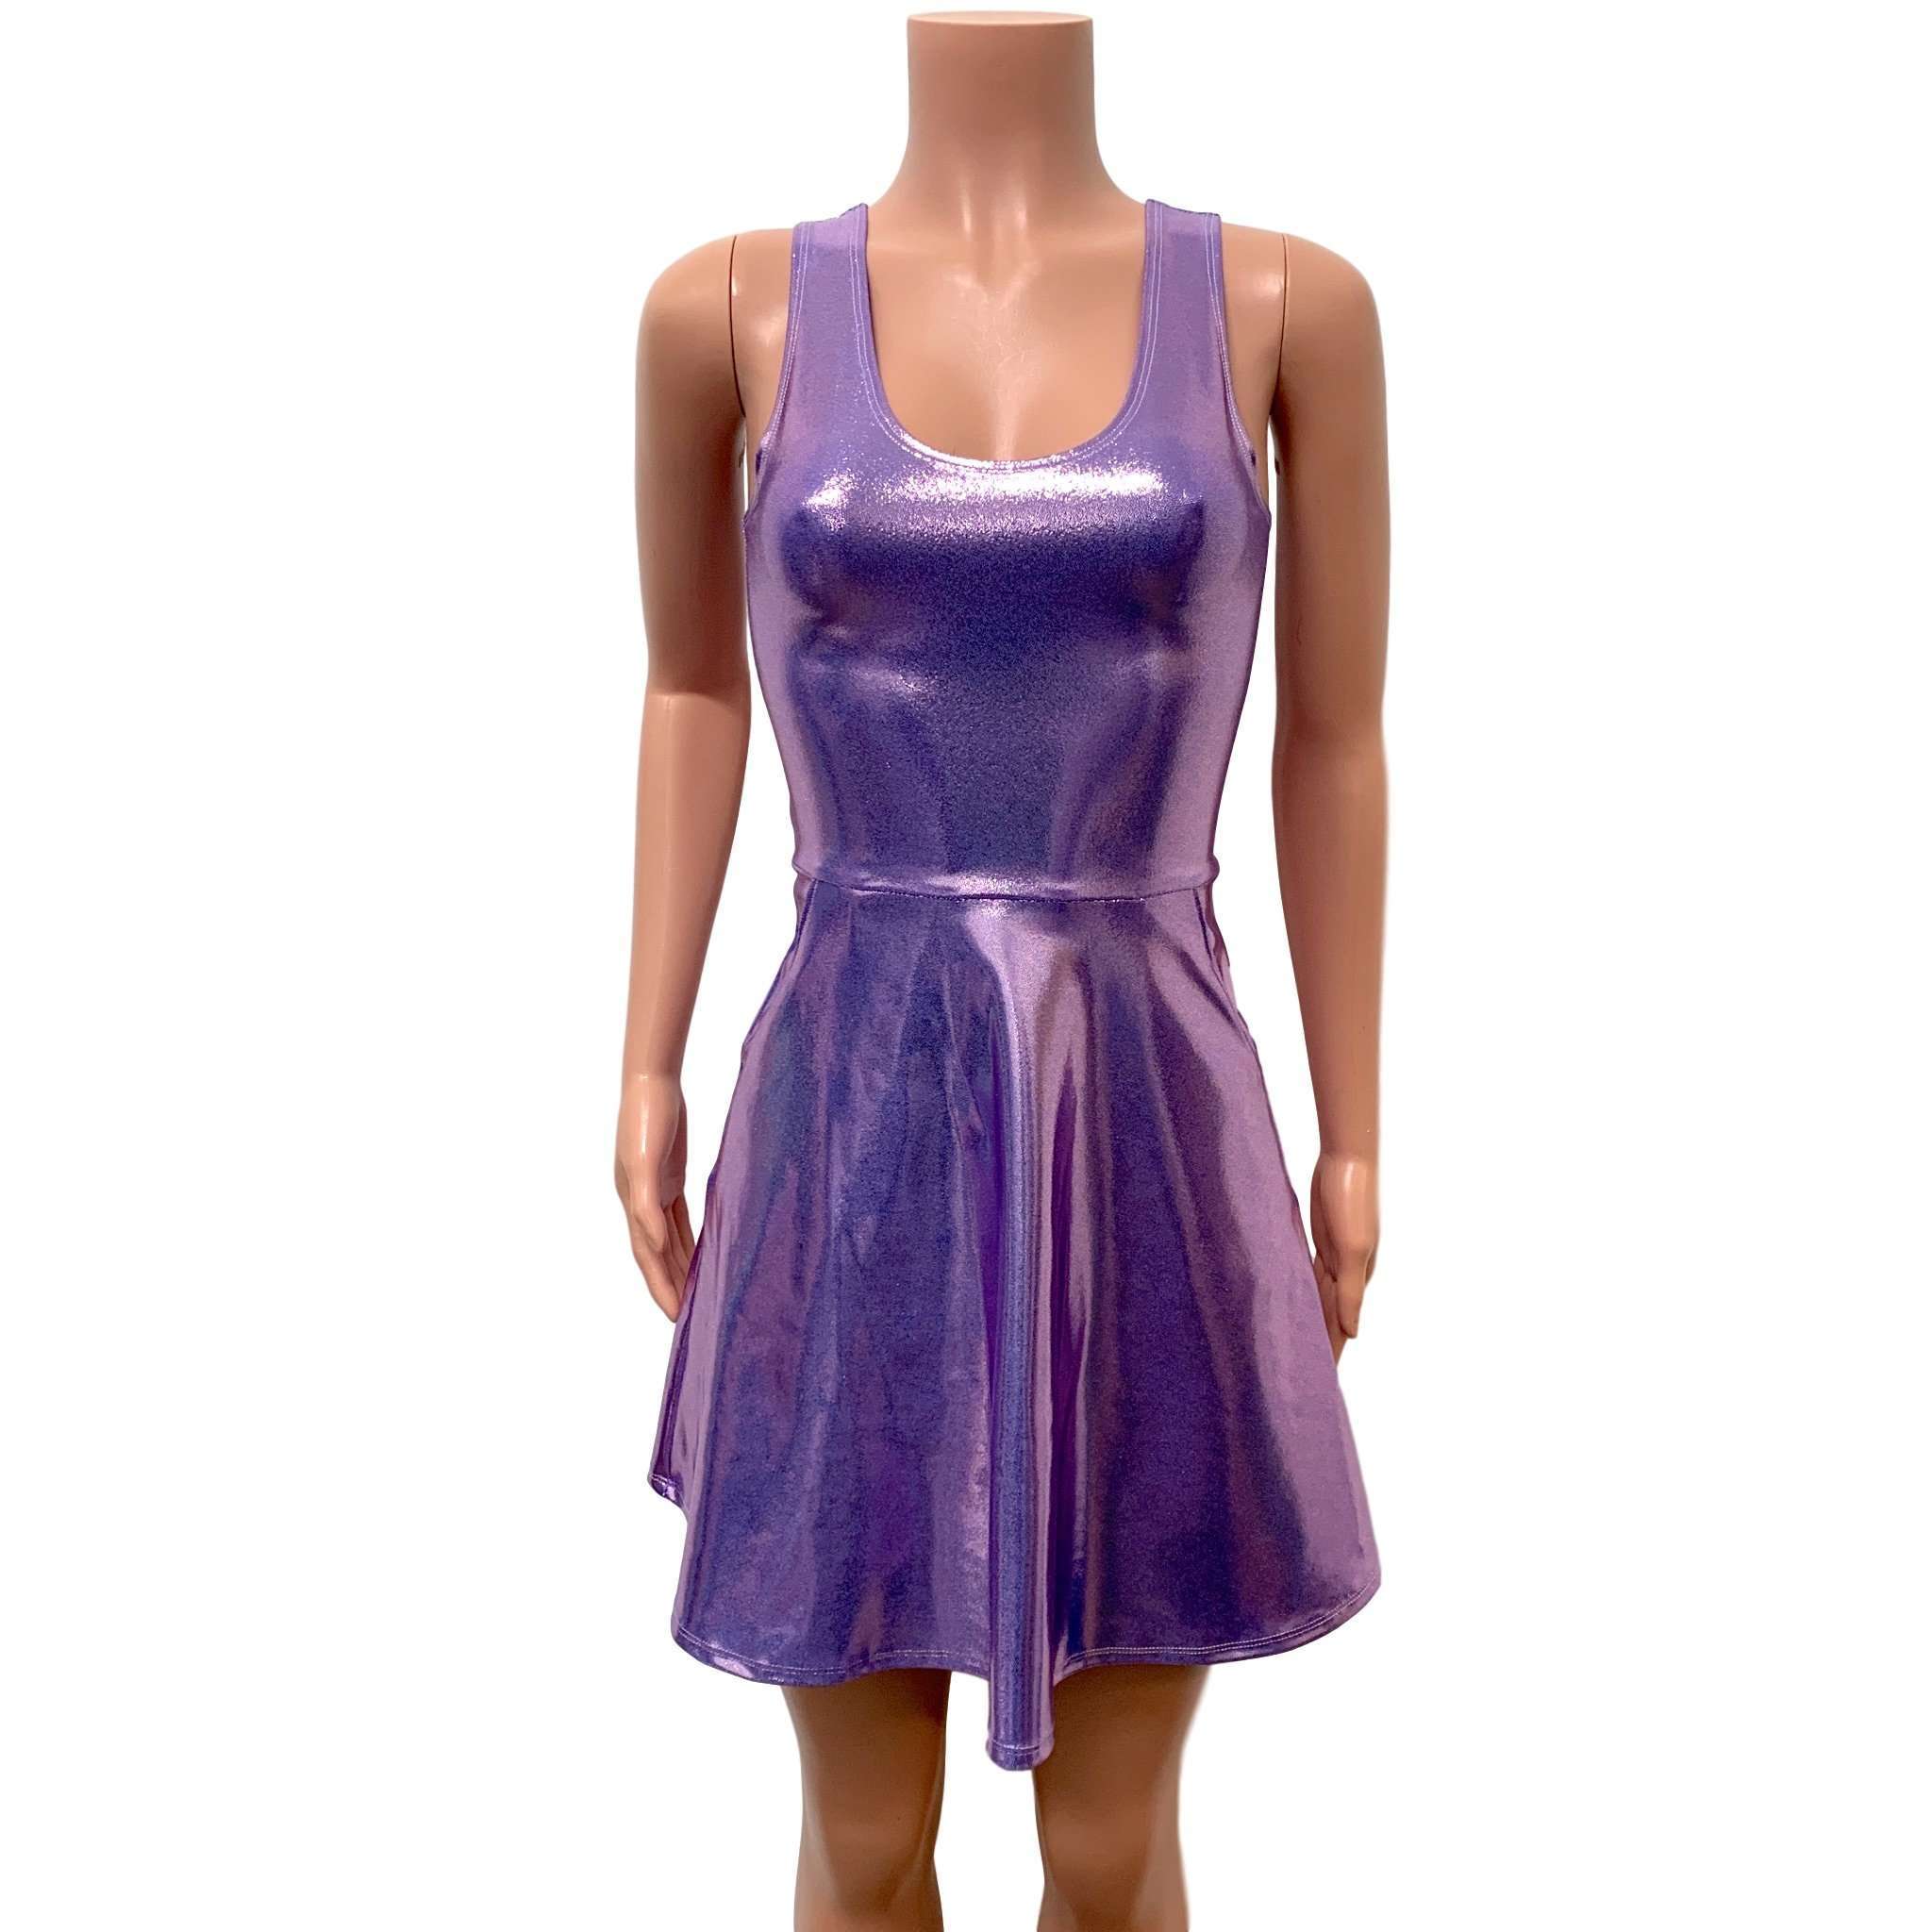 Purple Metallic Mini Dress Online Sales ...